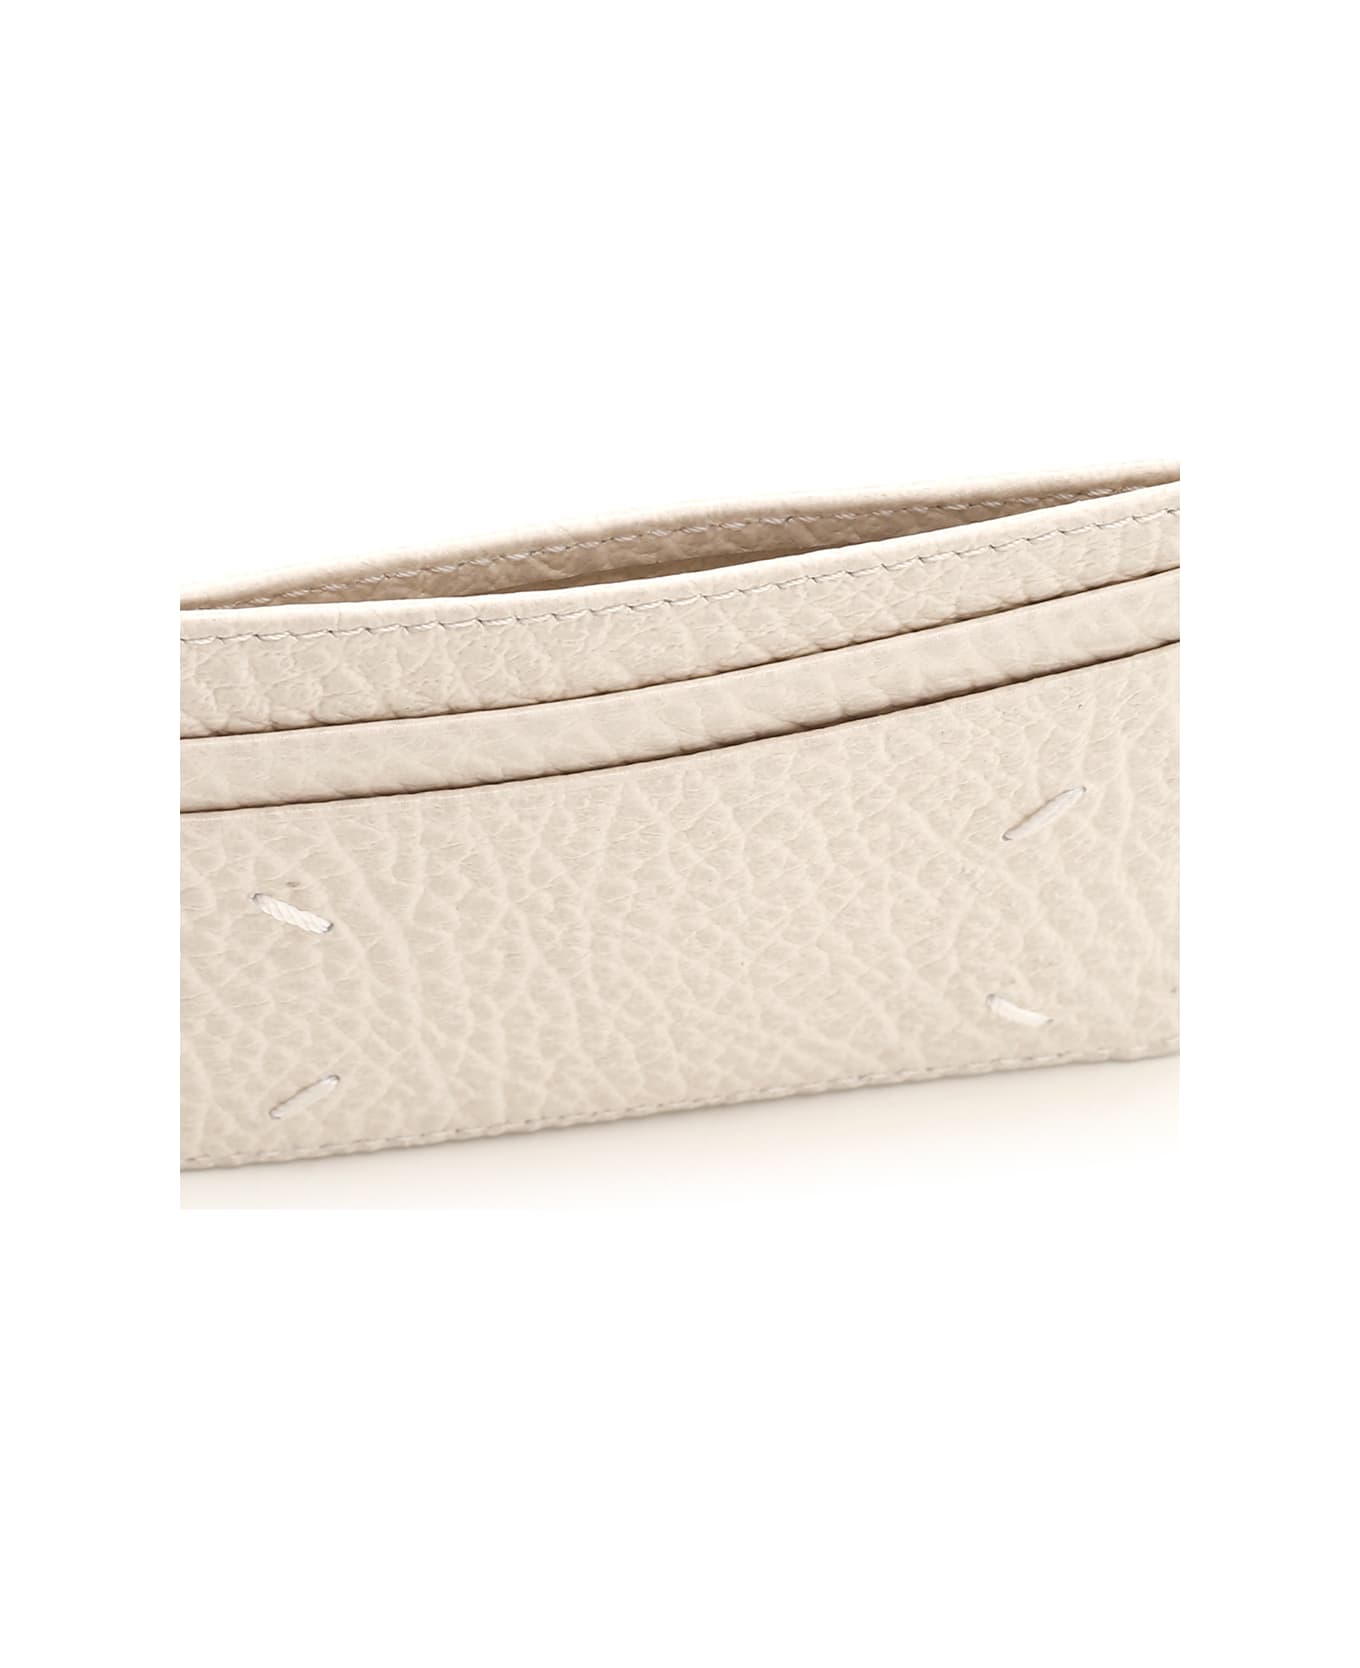 Maison Margiela Stitching' Leather Card Holder - Grey